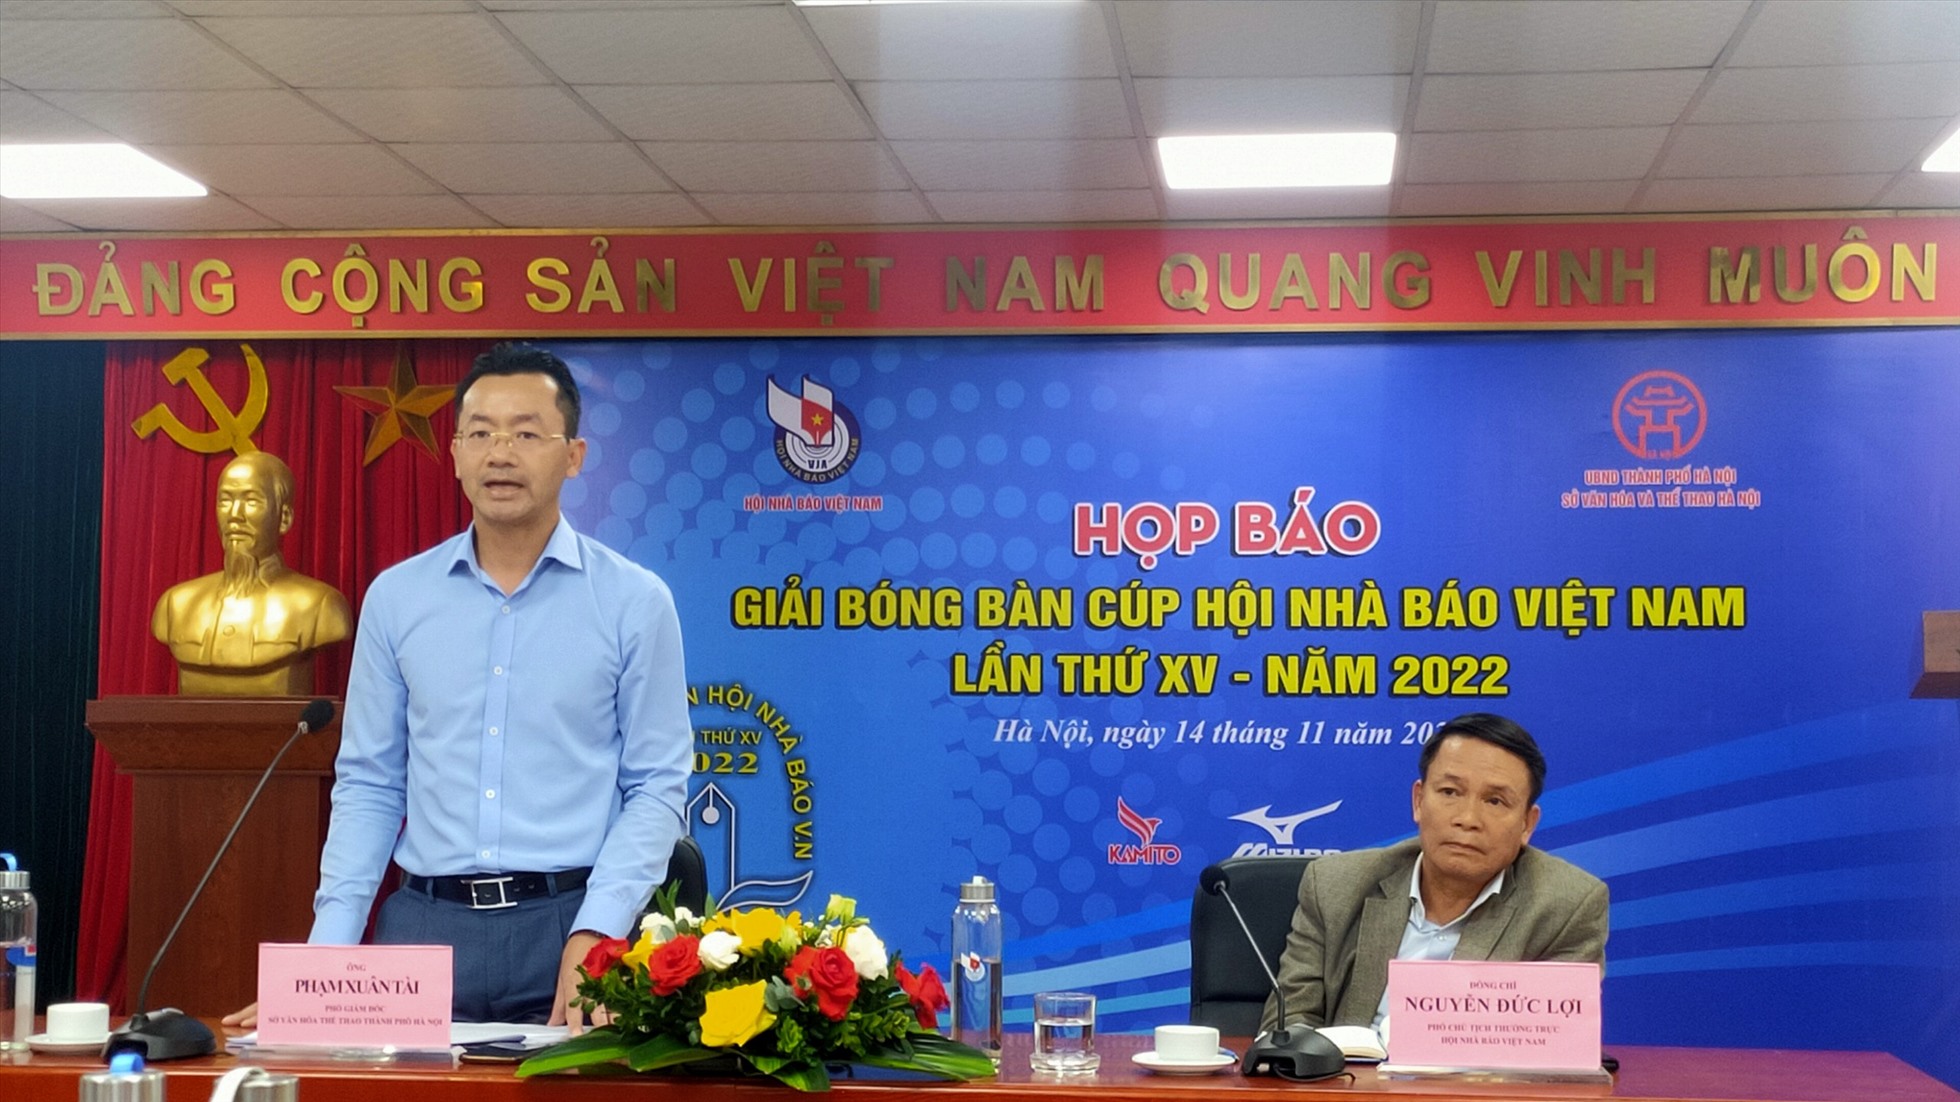 Đồng chí Phạm Xuân Tài – Phó giám đốc Sở Văn hóa-Thể thao Hà Nội, Phó ban tổ chức giải, phát biểu tại cuộc họp báo. Ảnh: T.N